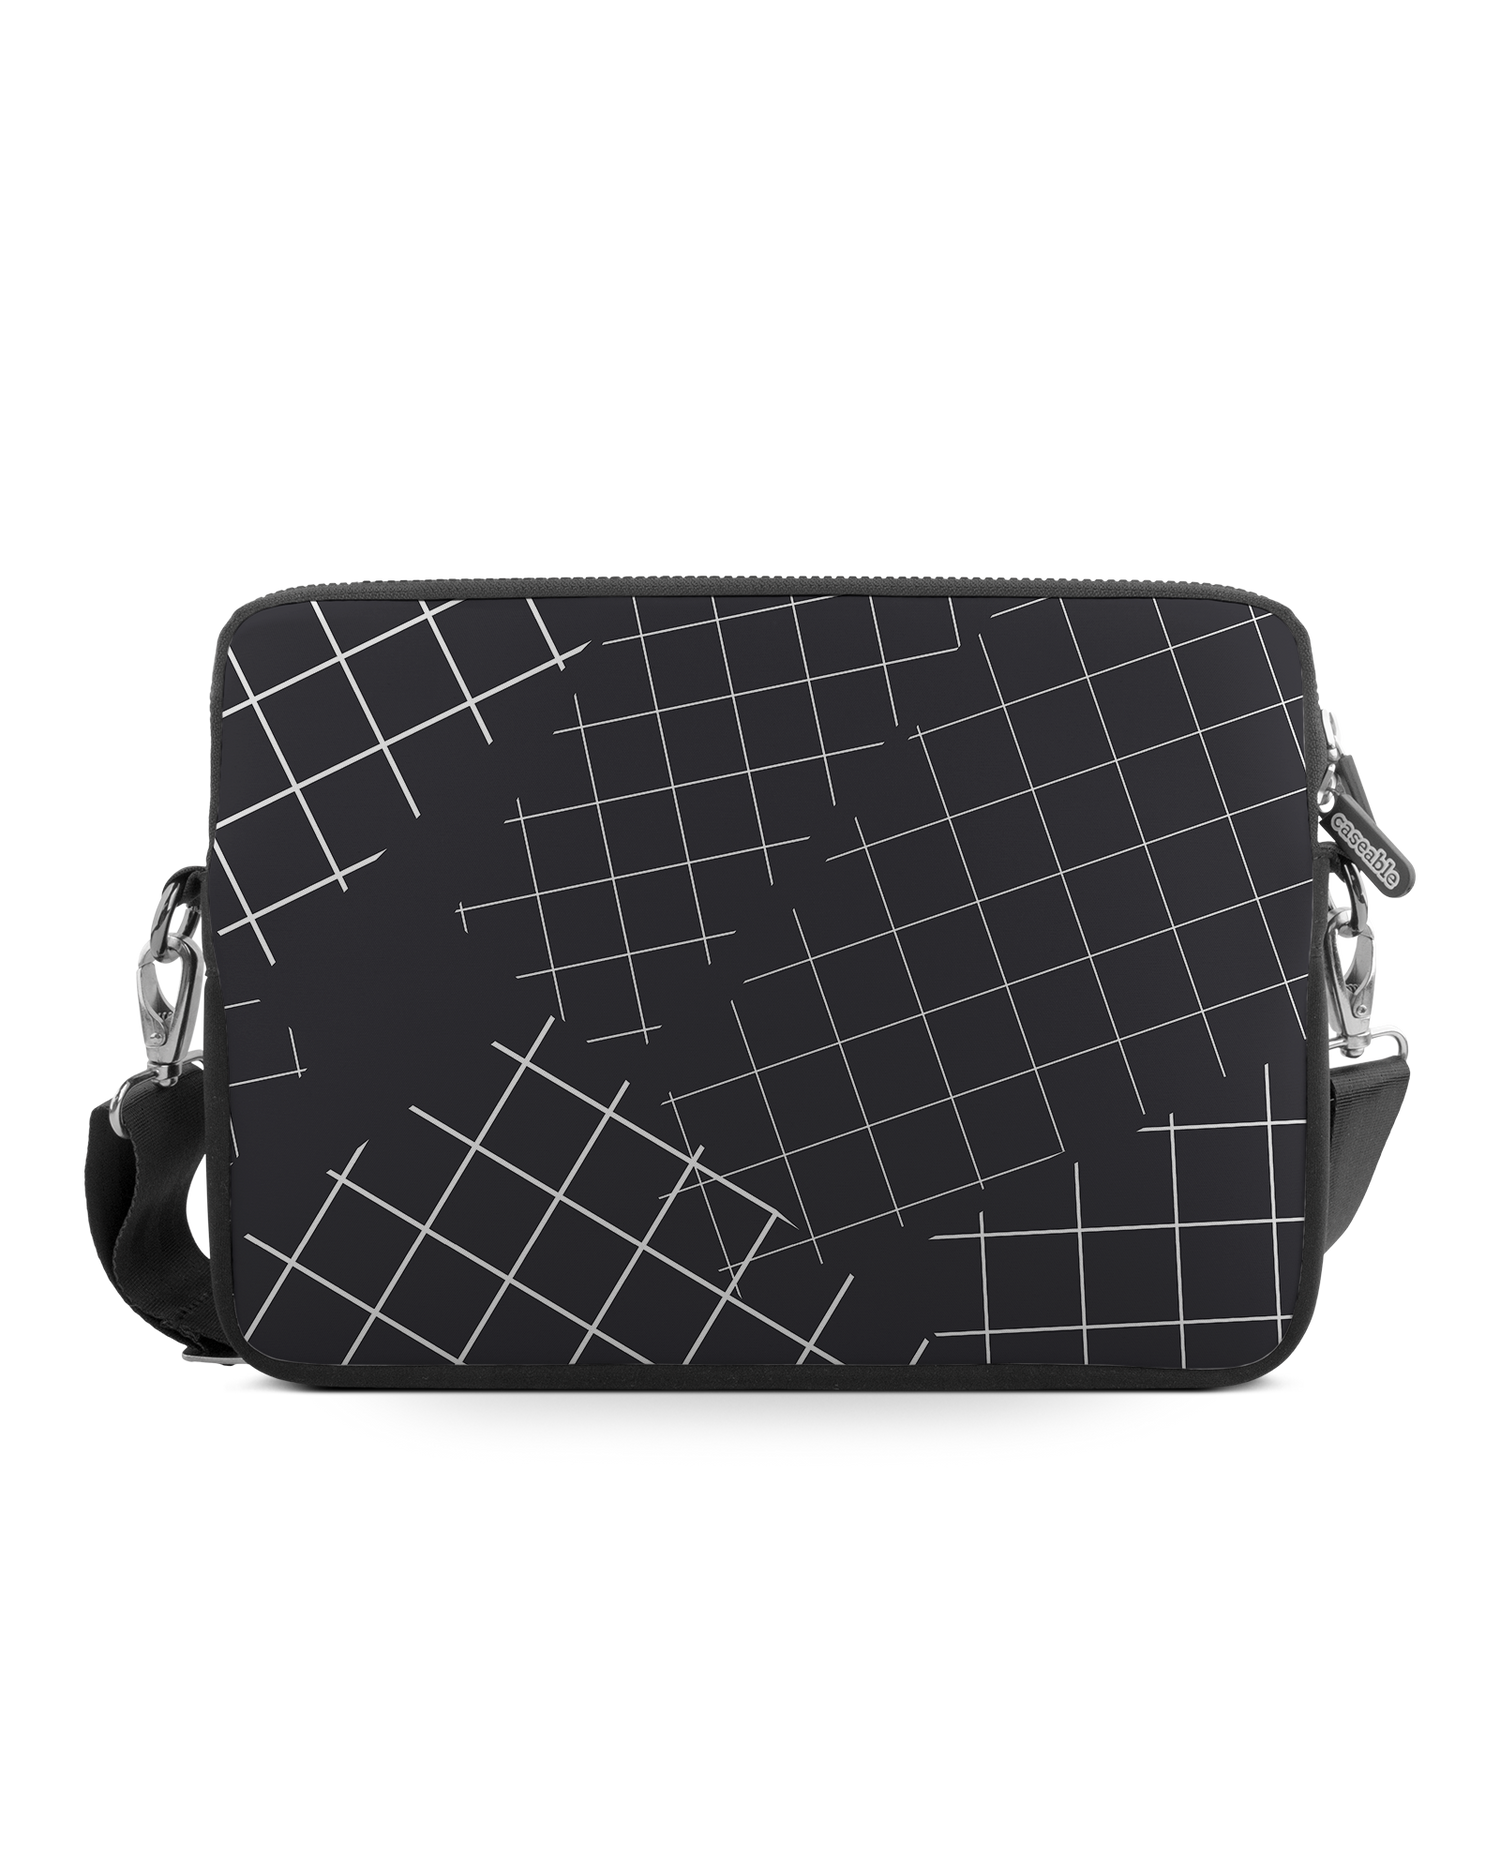 Grids Premium Laptop Bag 13 inch: Front View